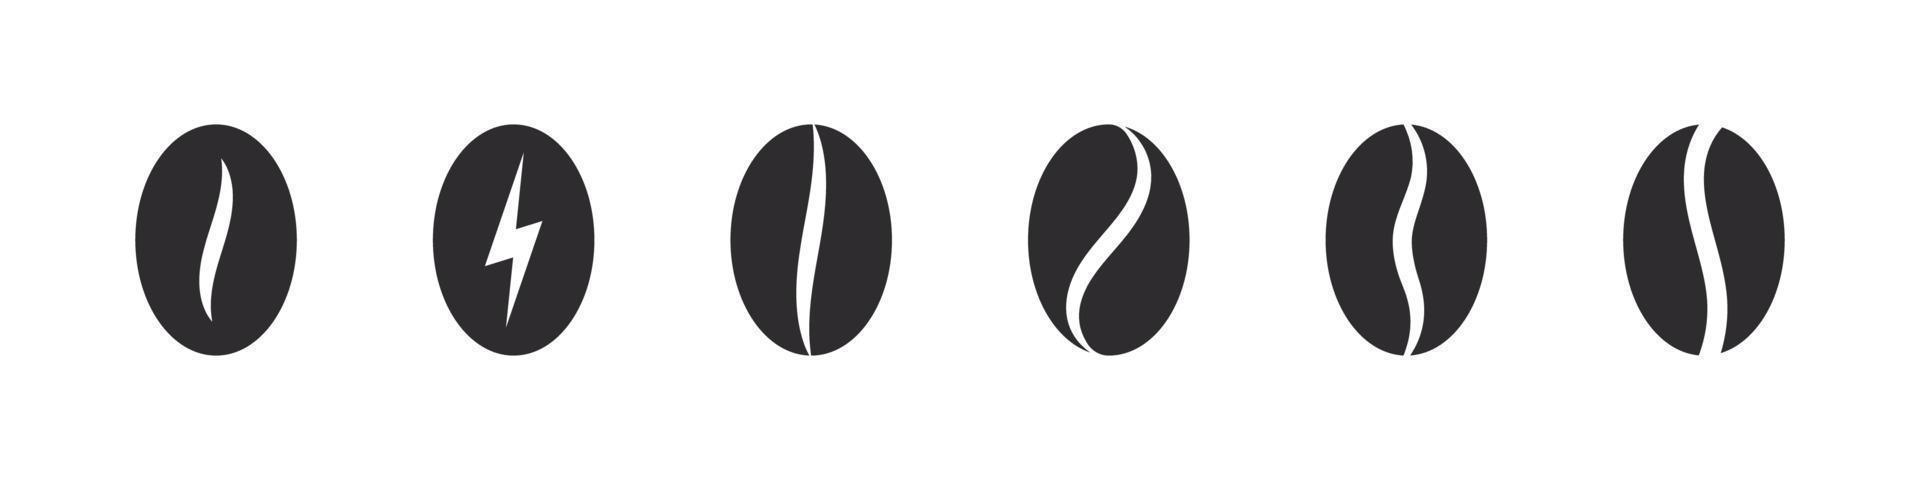 koffie bonen pictogrammen. koffie bonen in divers vormen. vector illustratie